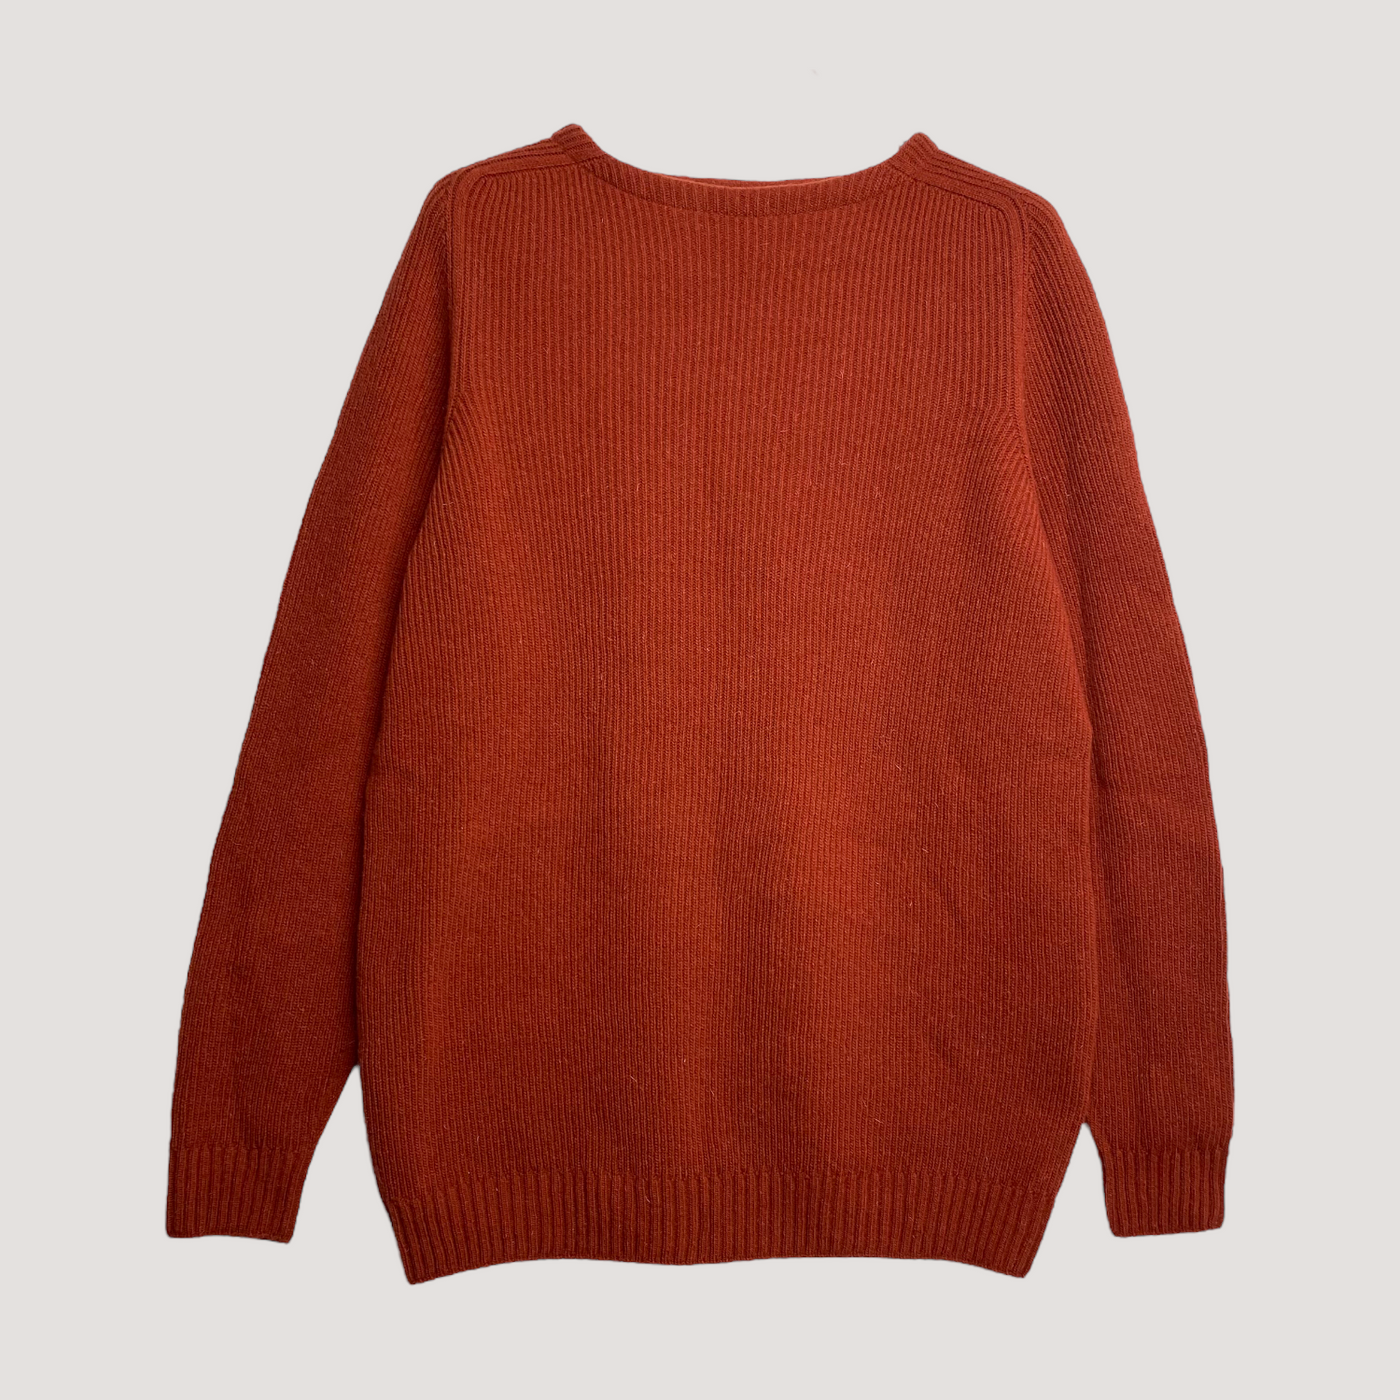 North Outdoor merino sweater, fire brick | woman L